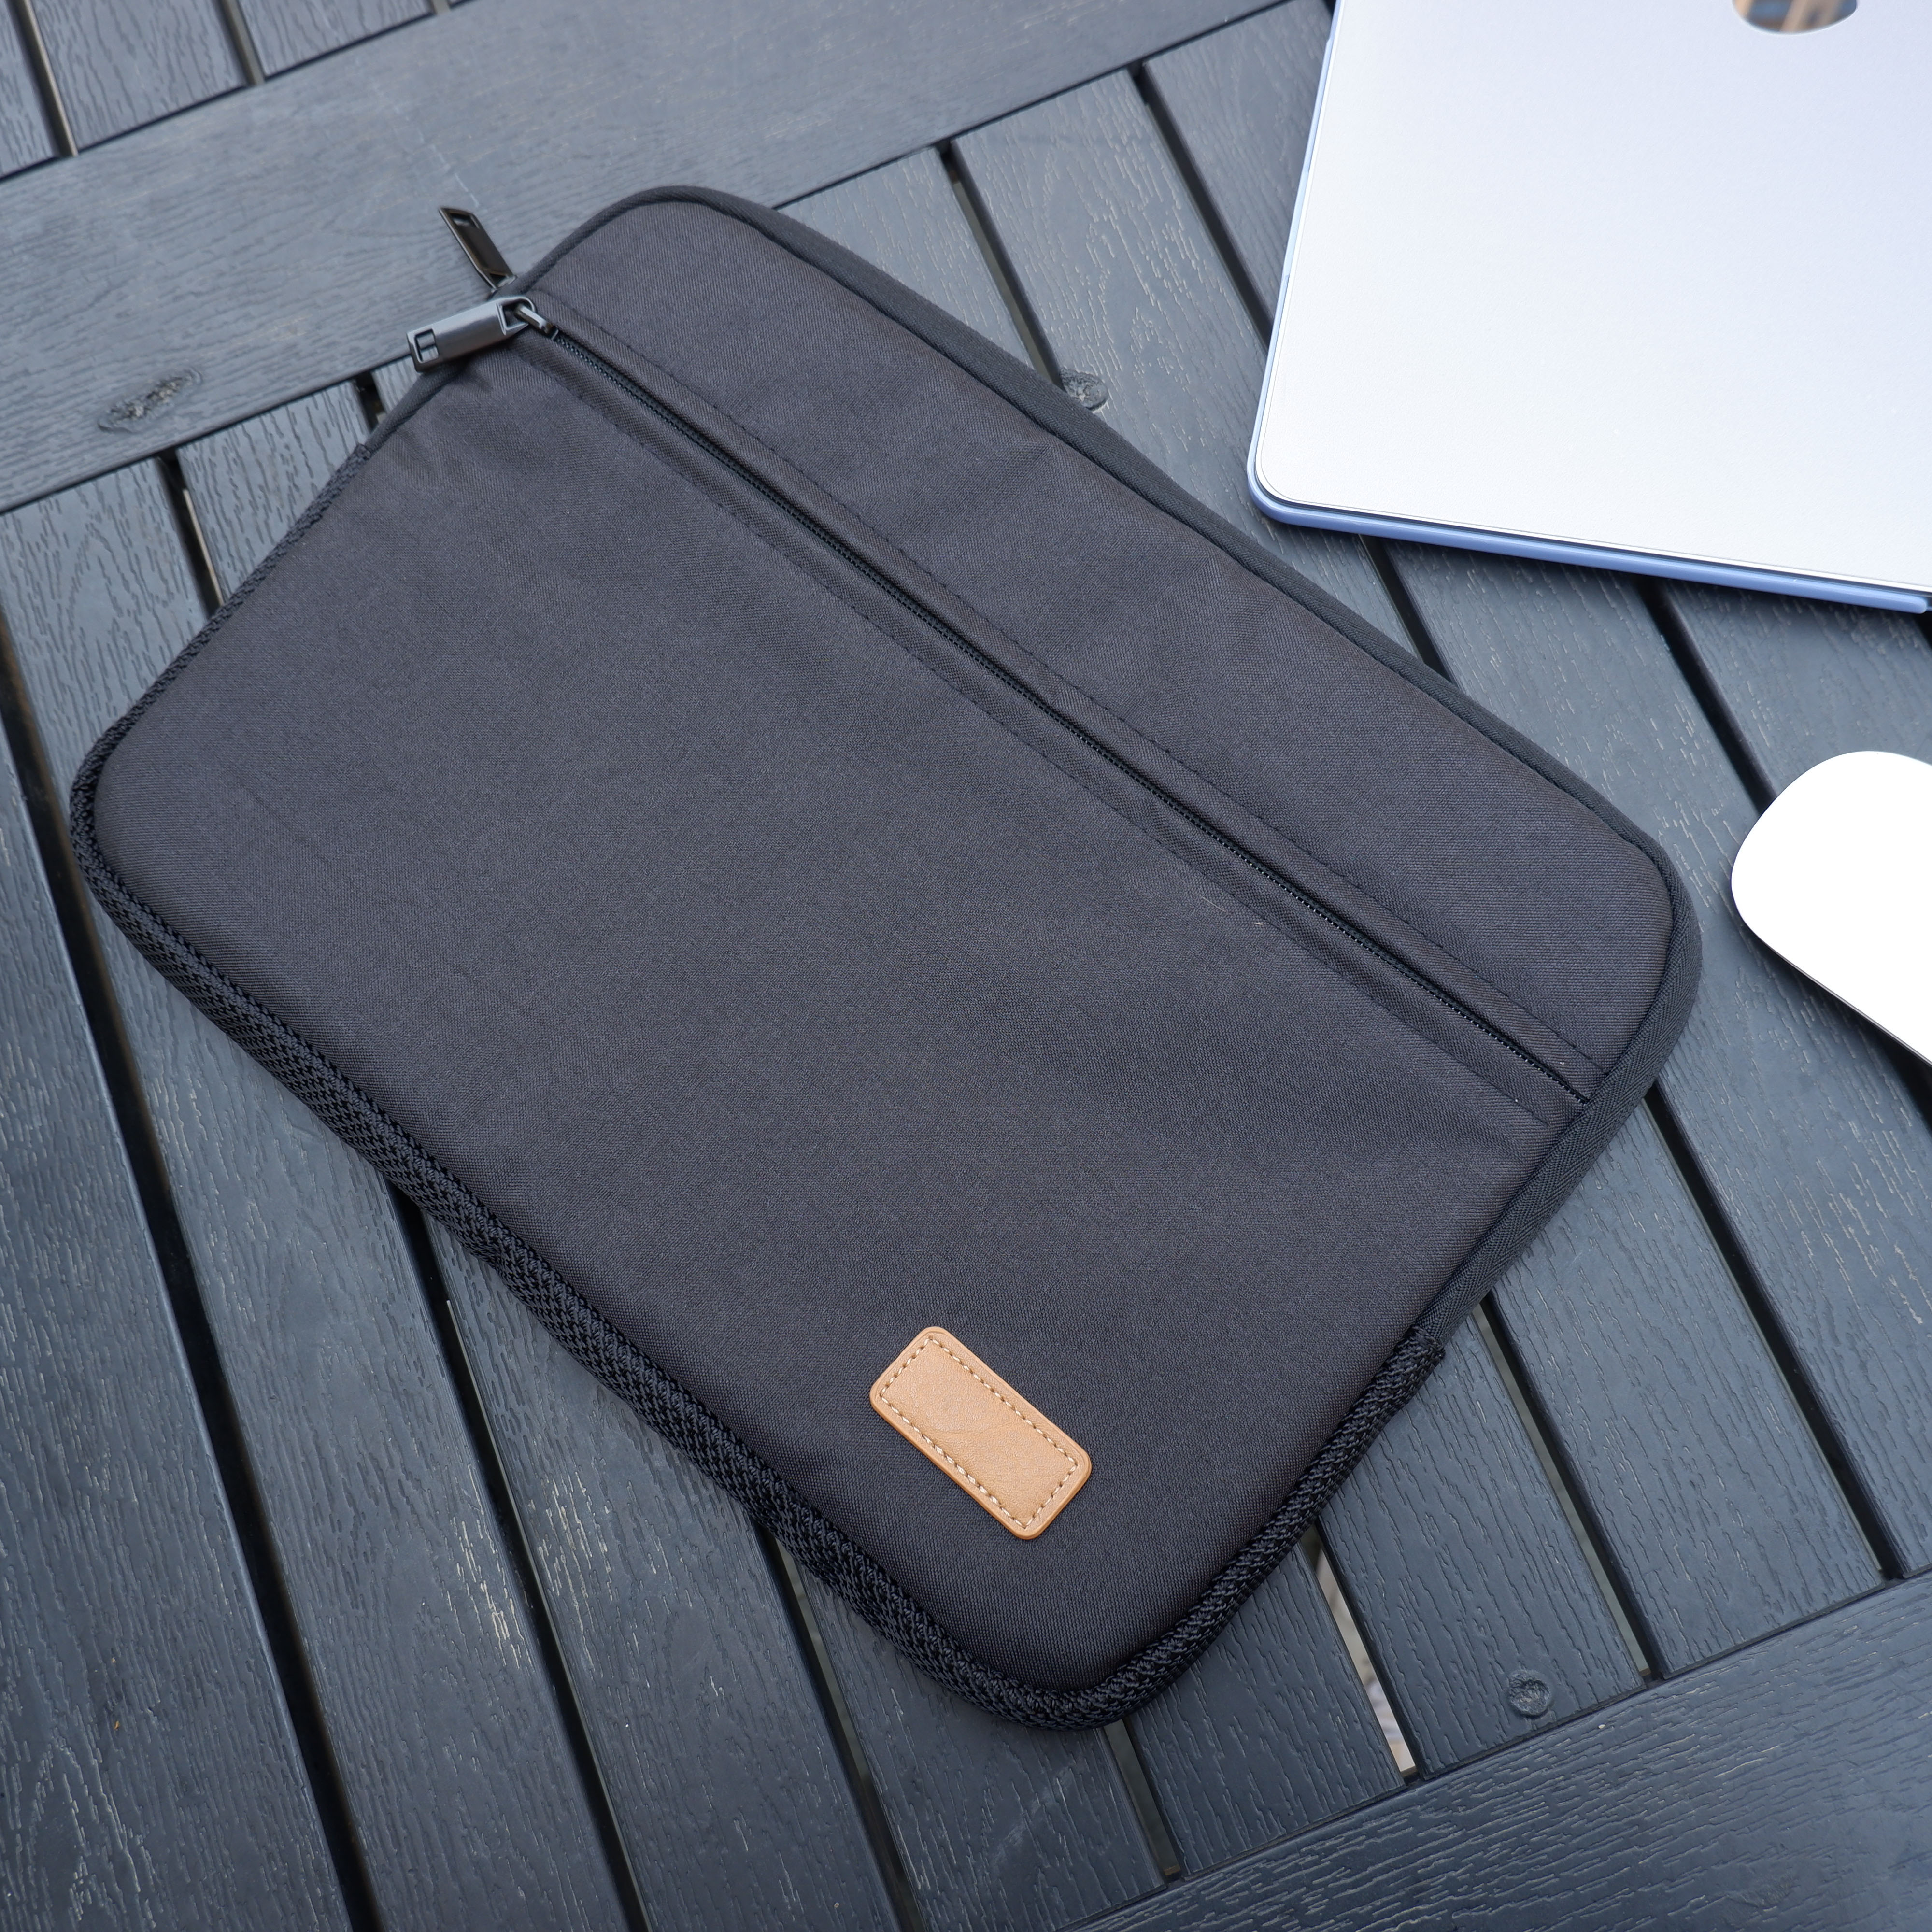 13-13.3 Inch Laptop Tablet Sleeve Case Tas Voor 13 Inch Macbook Pro/Macbook Air, oppervlak Boek Pro 5 4 3 2, Meest 12-13 Inch Ultrab